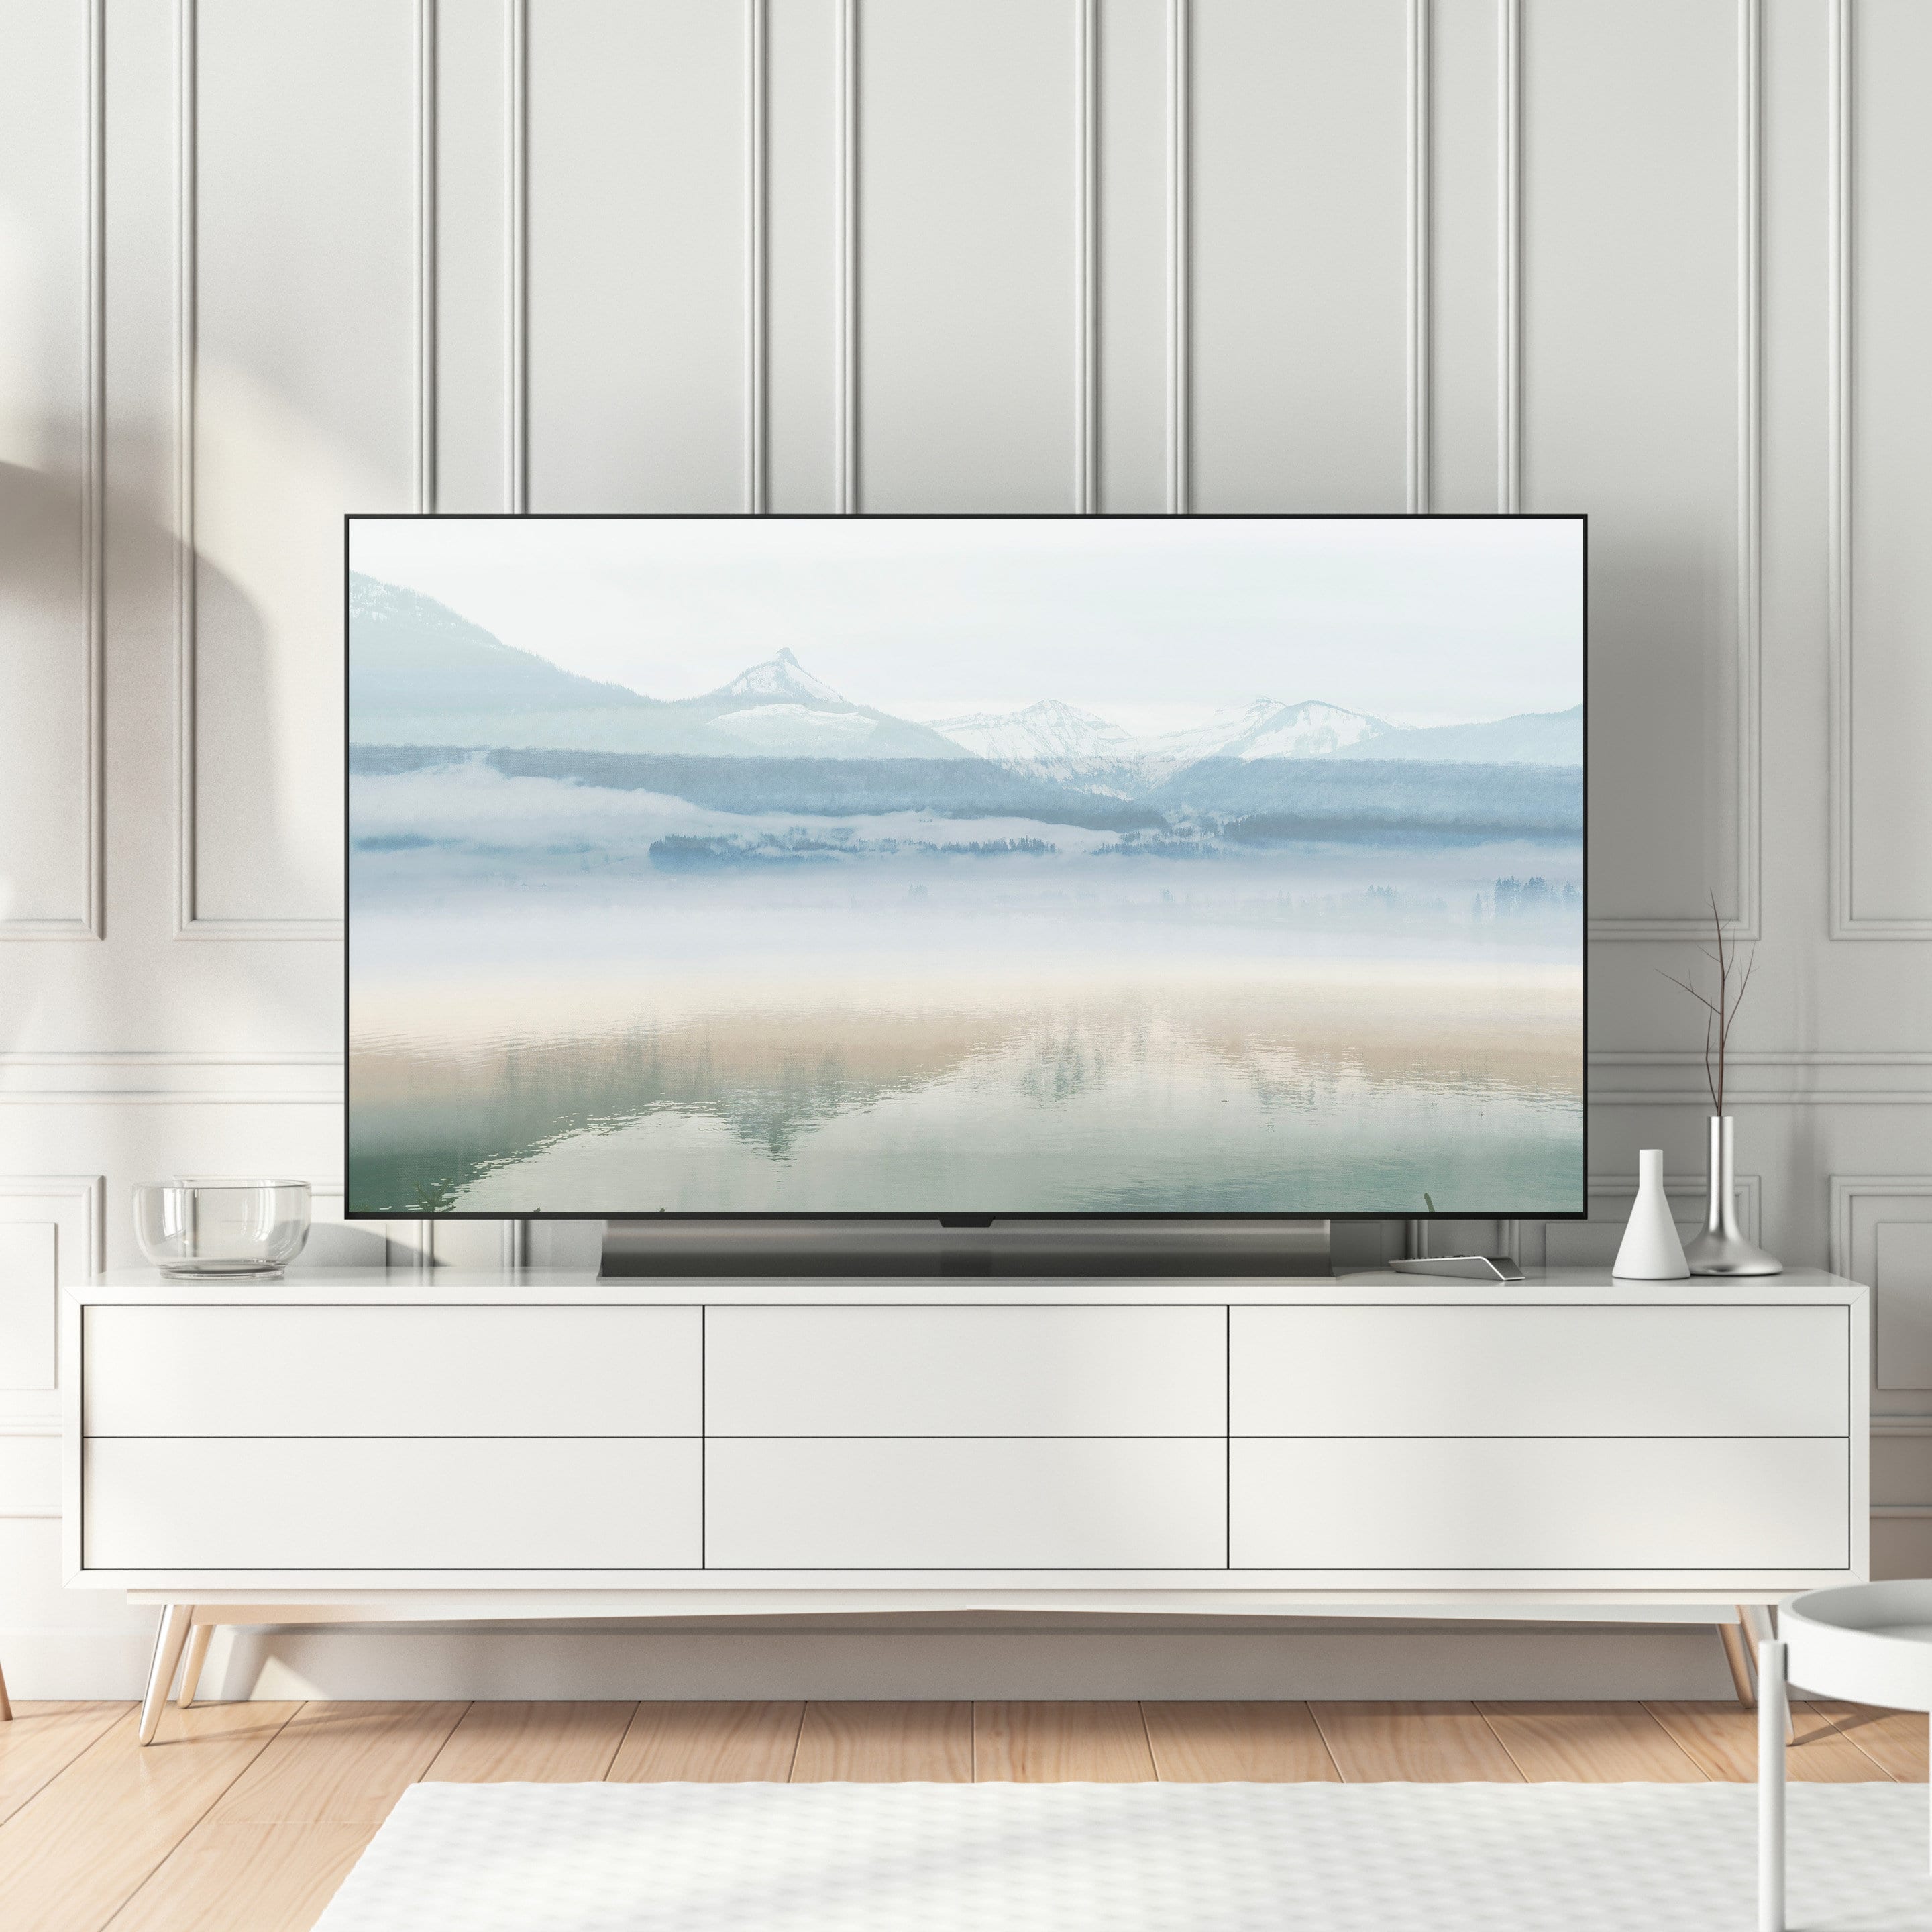 Samsung Frame TV Art. Instant Download. Art for Digital TV. - Etsy UK